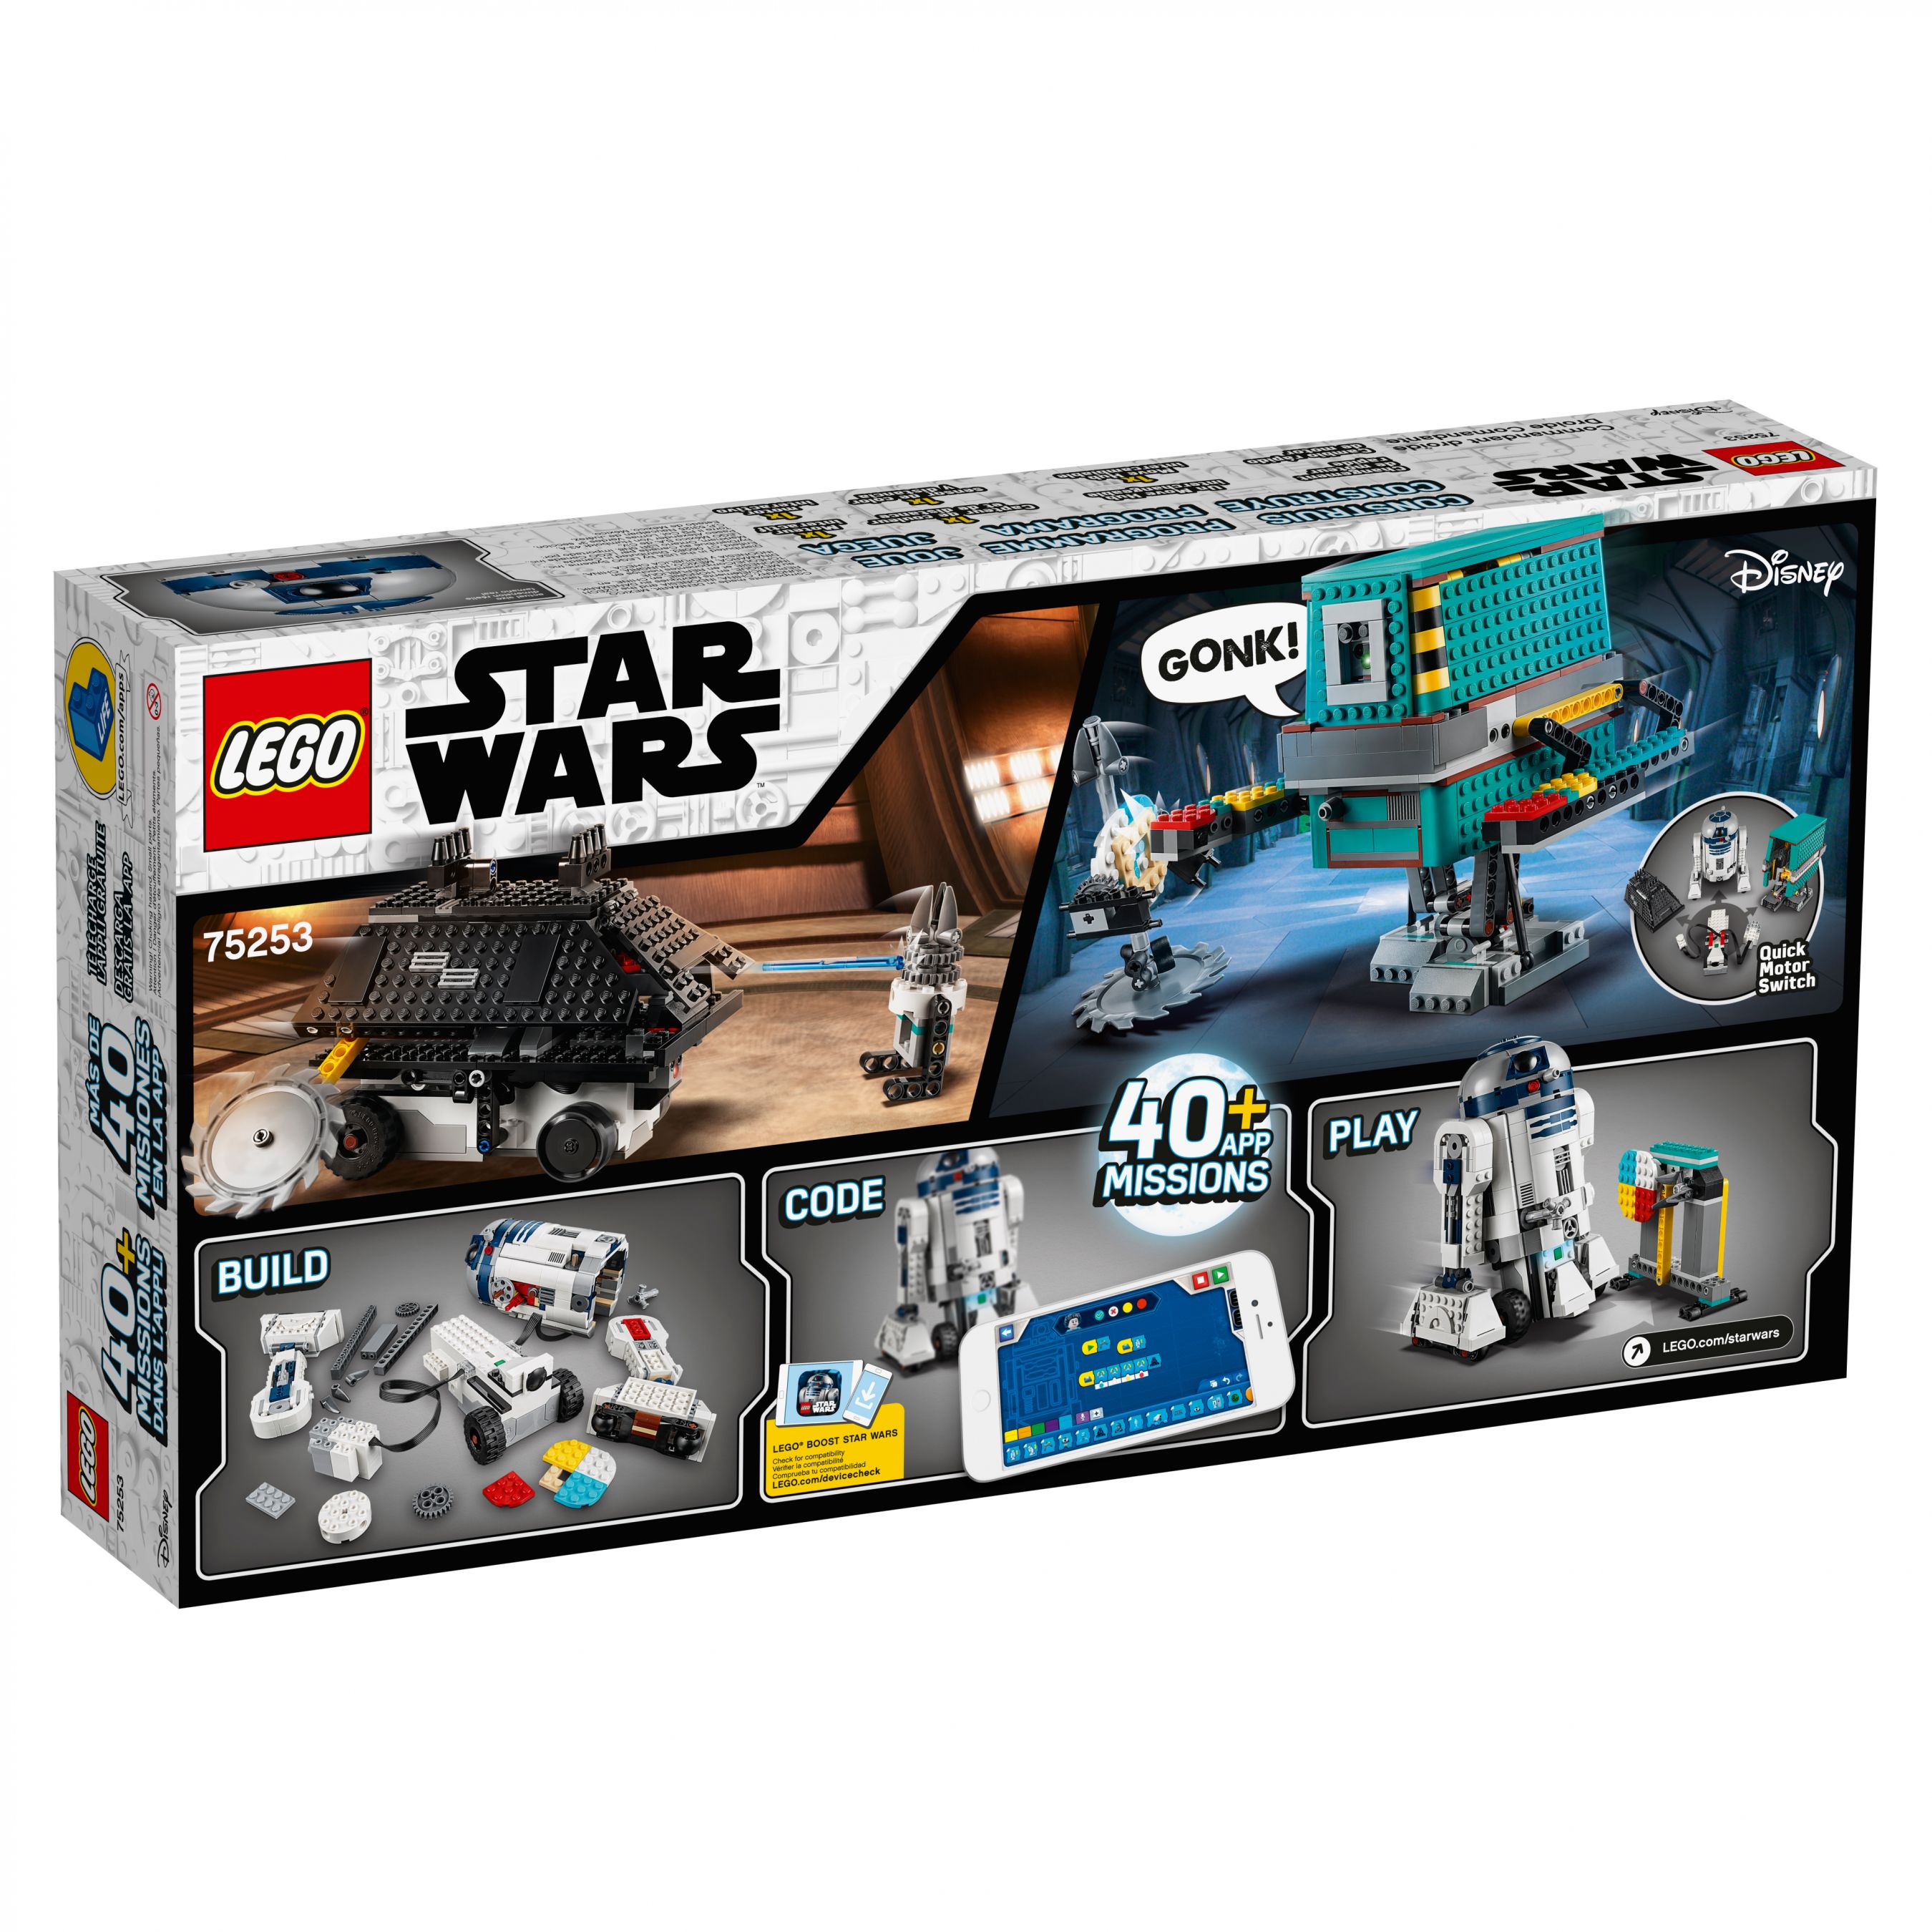 LEGO BOOST 75253 Star Wars™ BOOST Droide LEGO_75253_alt5.jpg